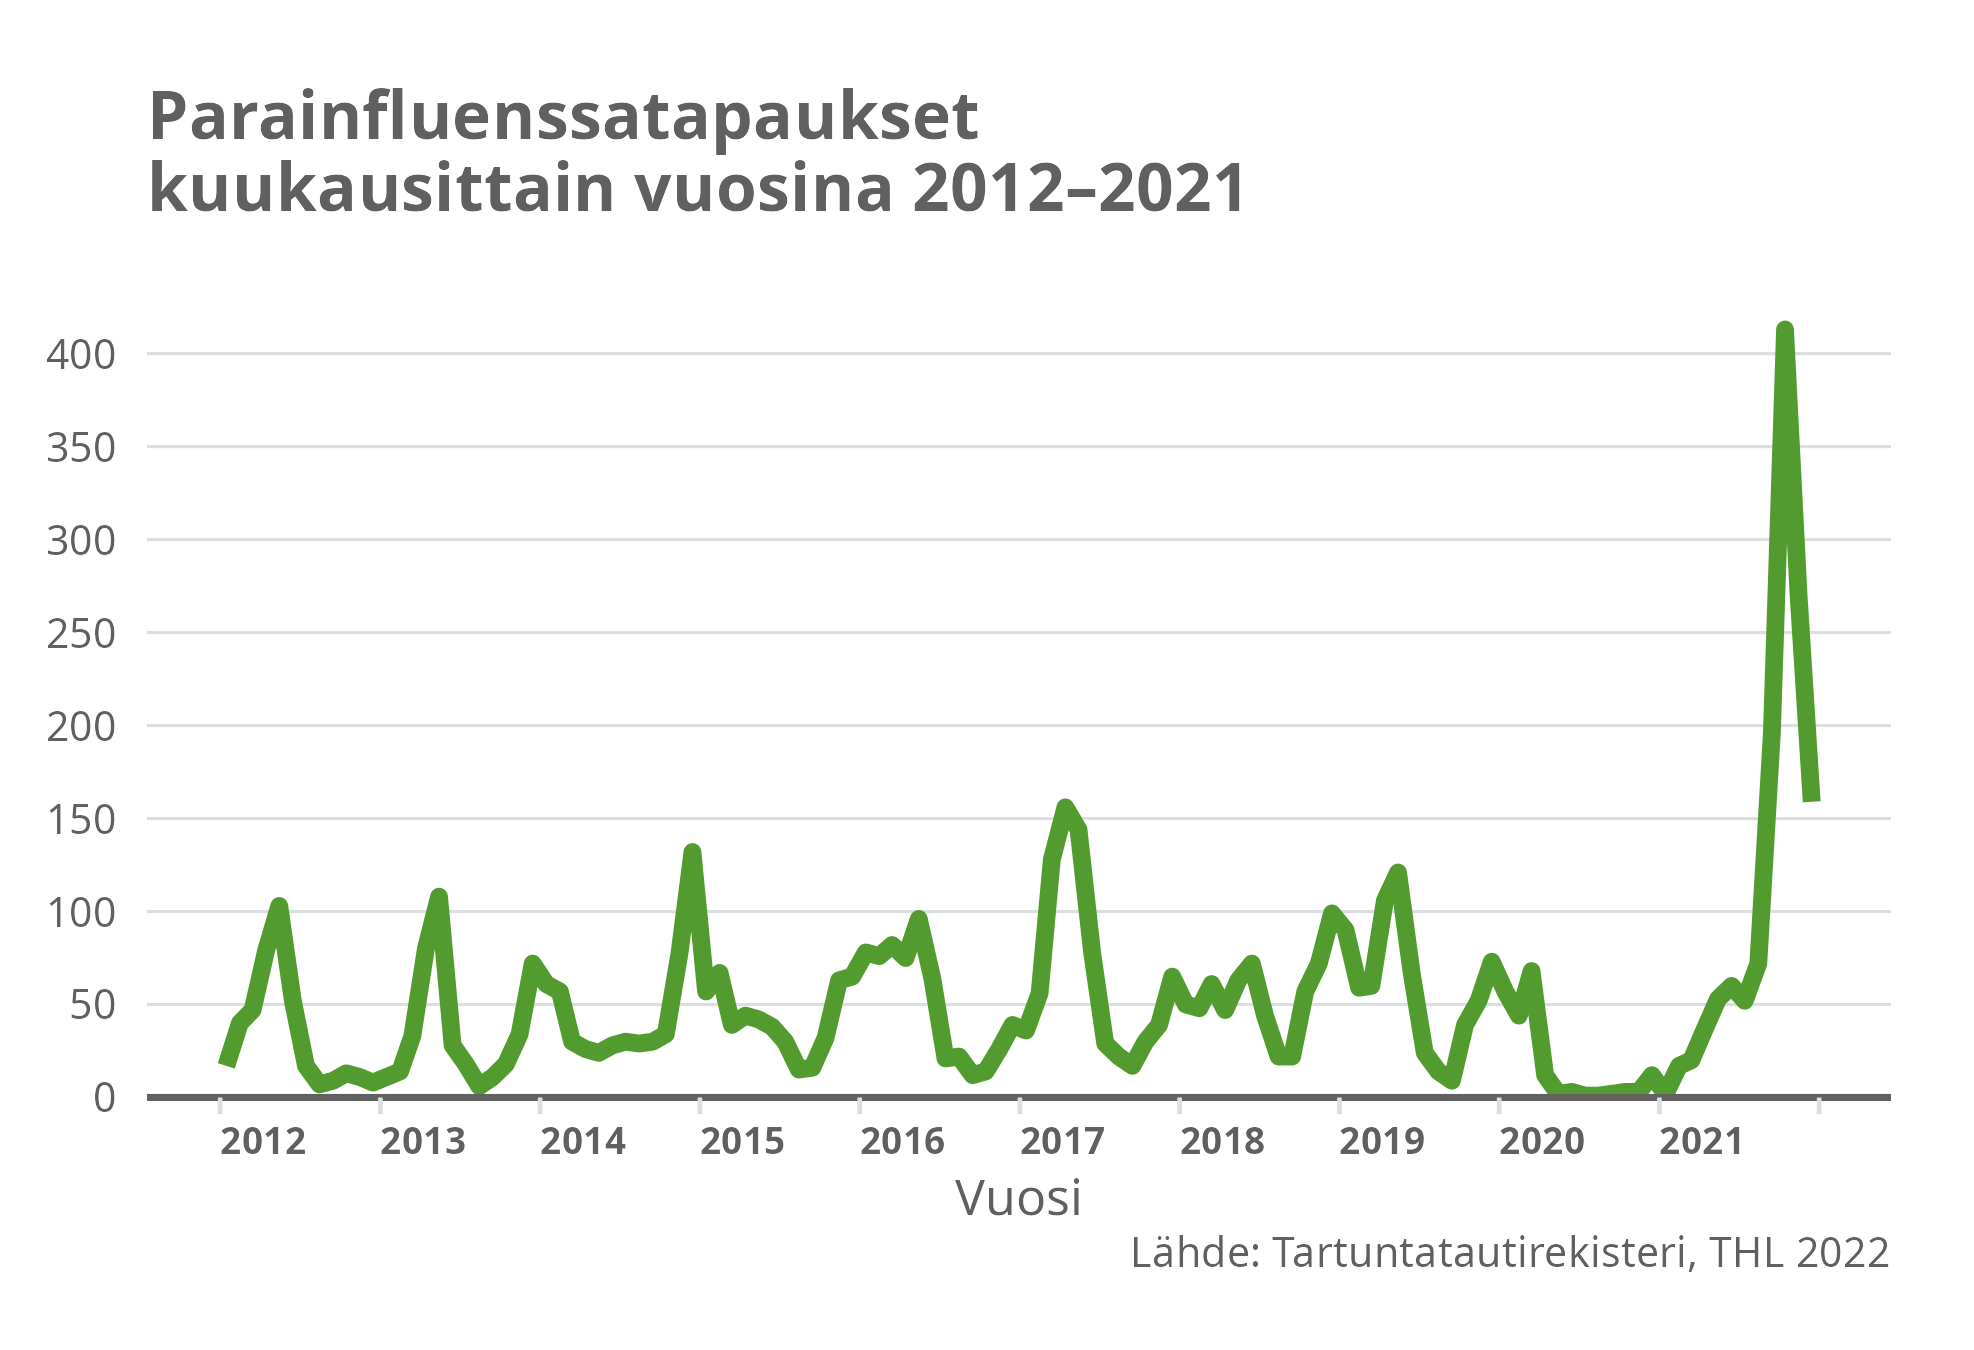 Parainfluenssatapaukset kuukausittain vuosina 2012-2021.